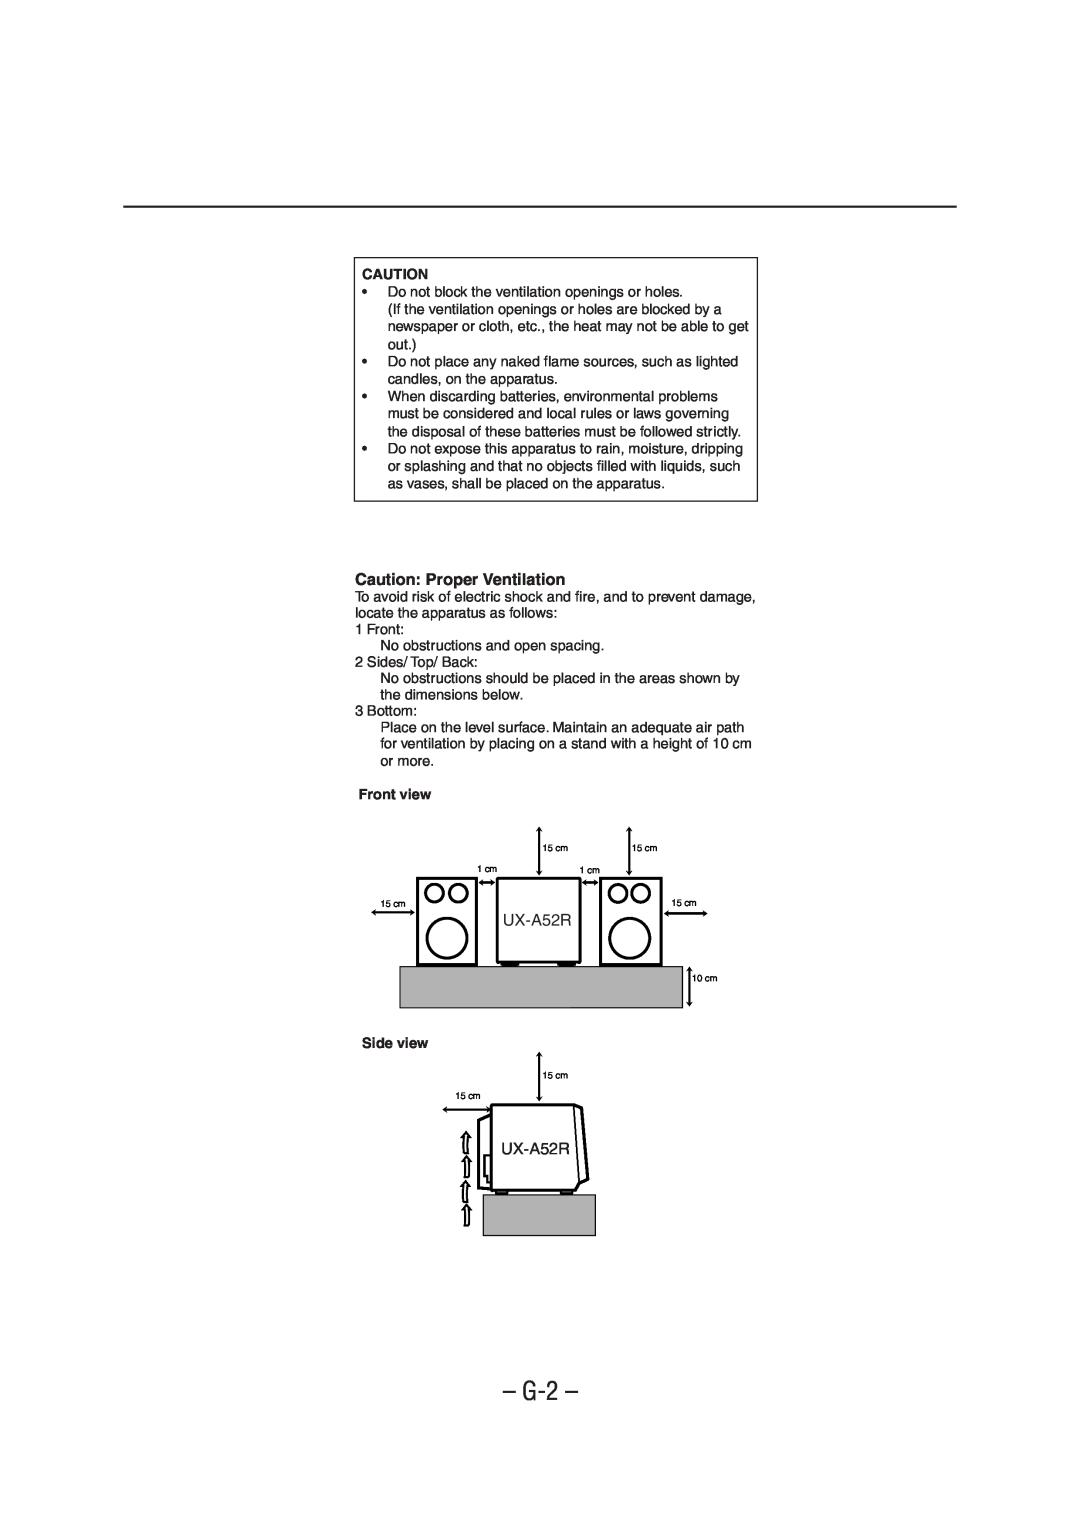 JVC UX-A52R manual G-2, Caution Proper Ventilation, Front view, Side view 